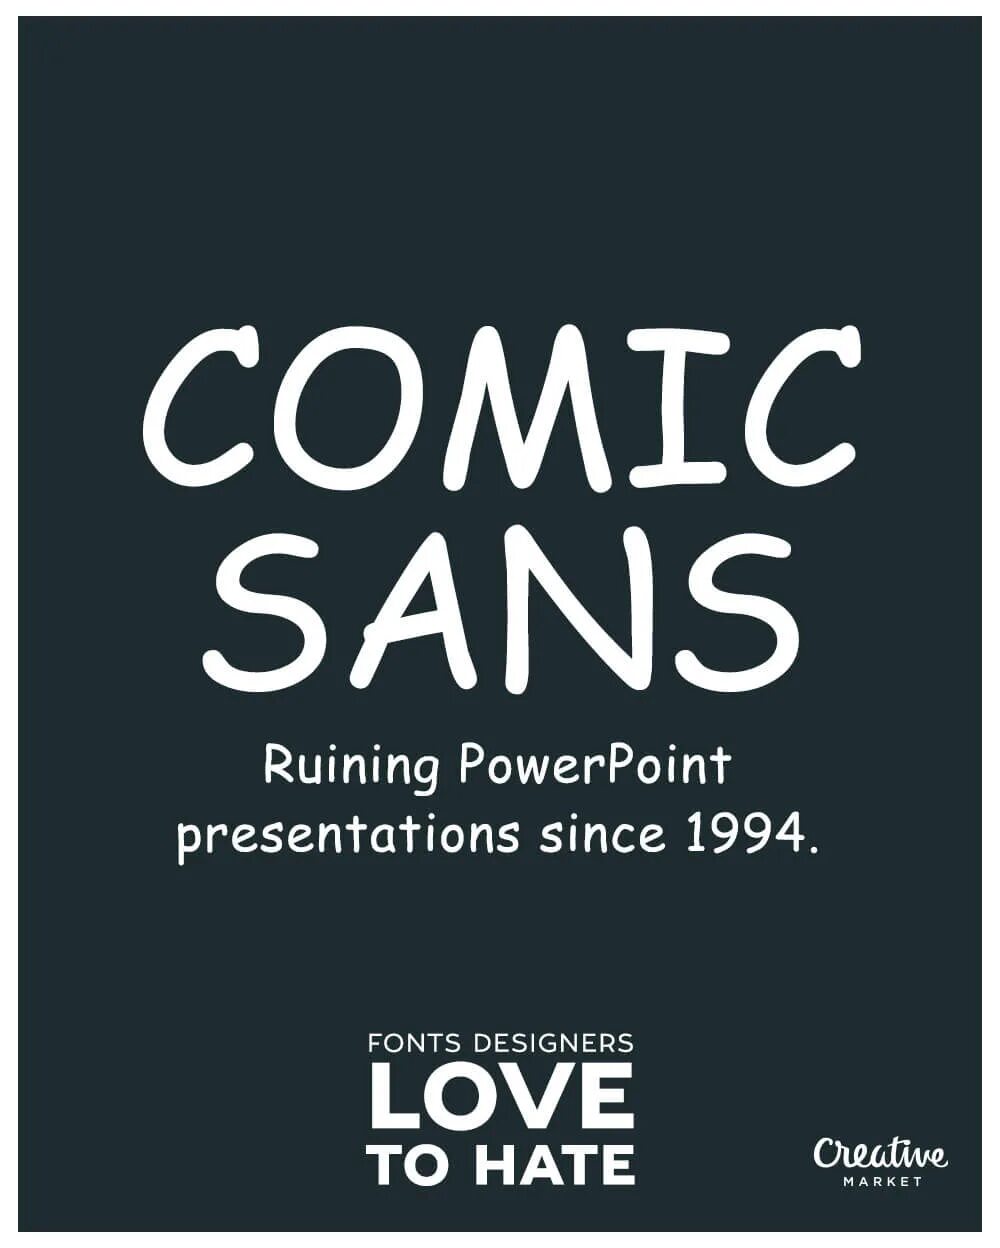 Шрифт bad comic. Дизайнер Comic Sans. I hate Comic Sans шрифт. Comic Sans австралийский дизайнер. Bad fonts.